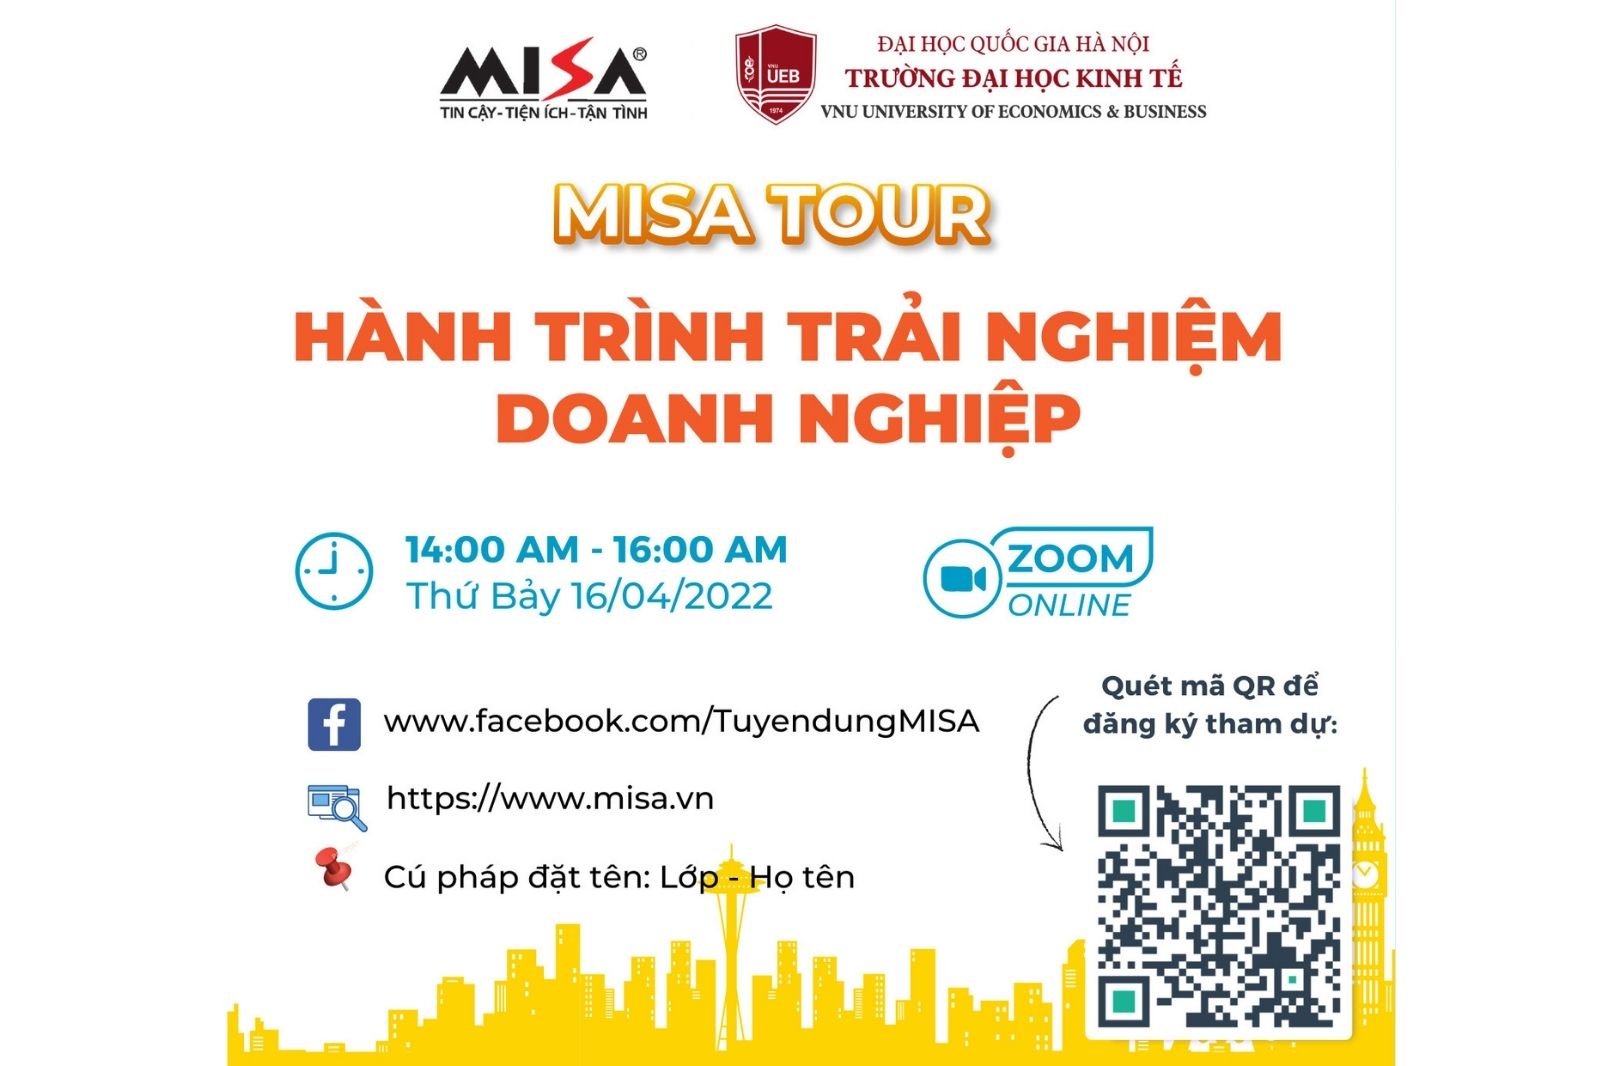 MISA TOUR - Hành trình khám phá trải nghiệm Doanh nghiệp có 1-0-2